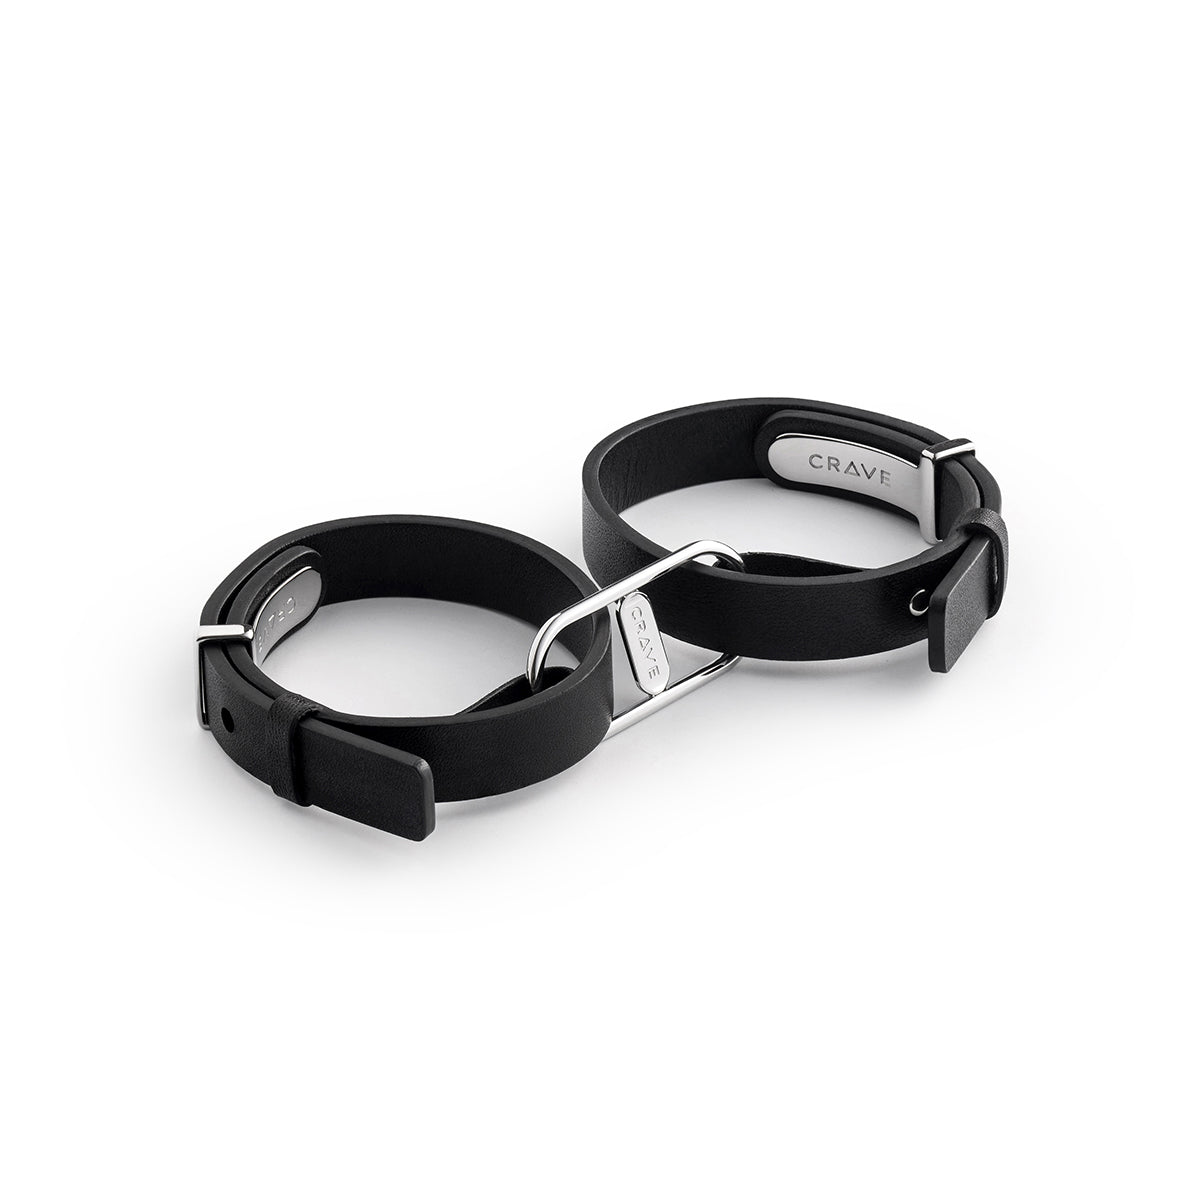 Crave ICON Cuffs- Black/Silver